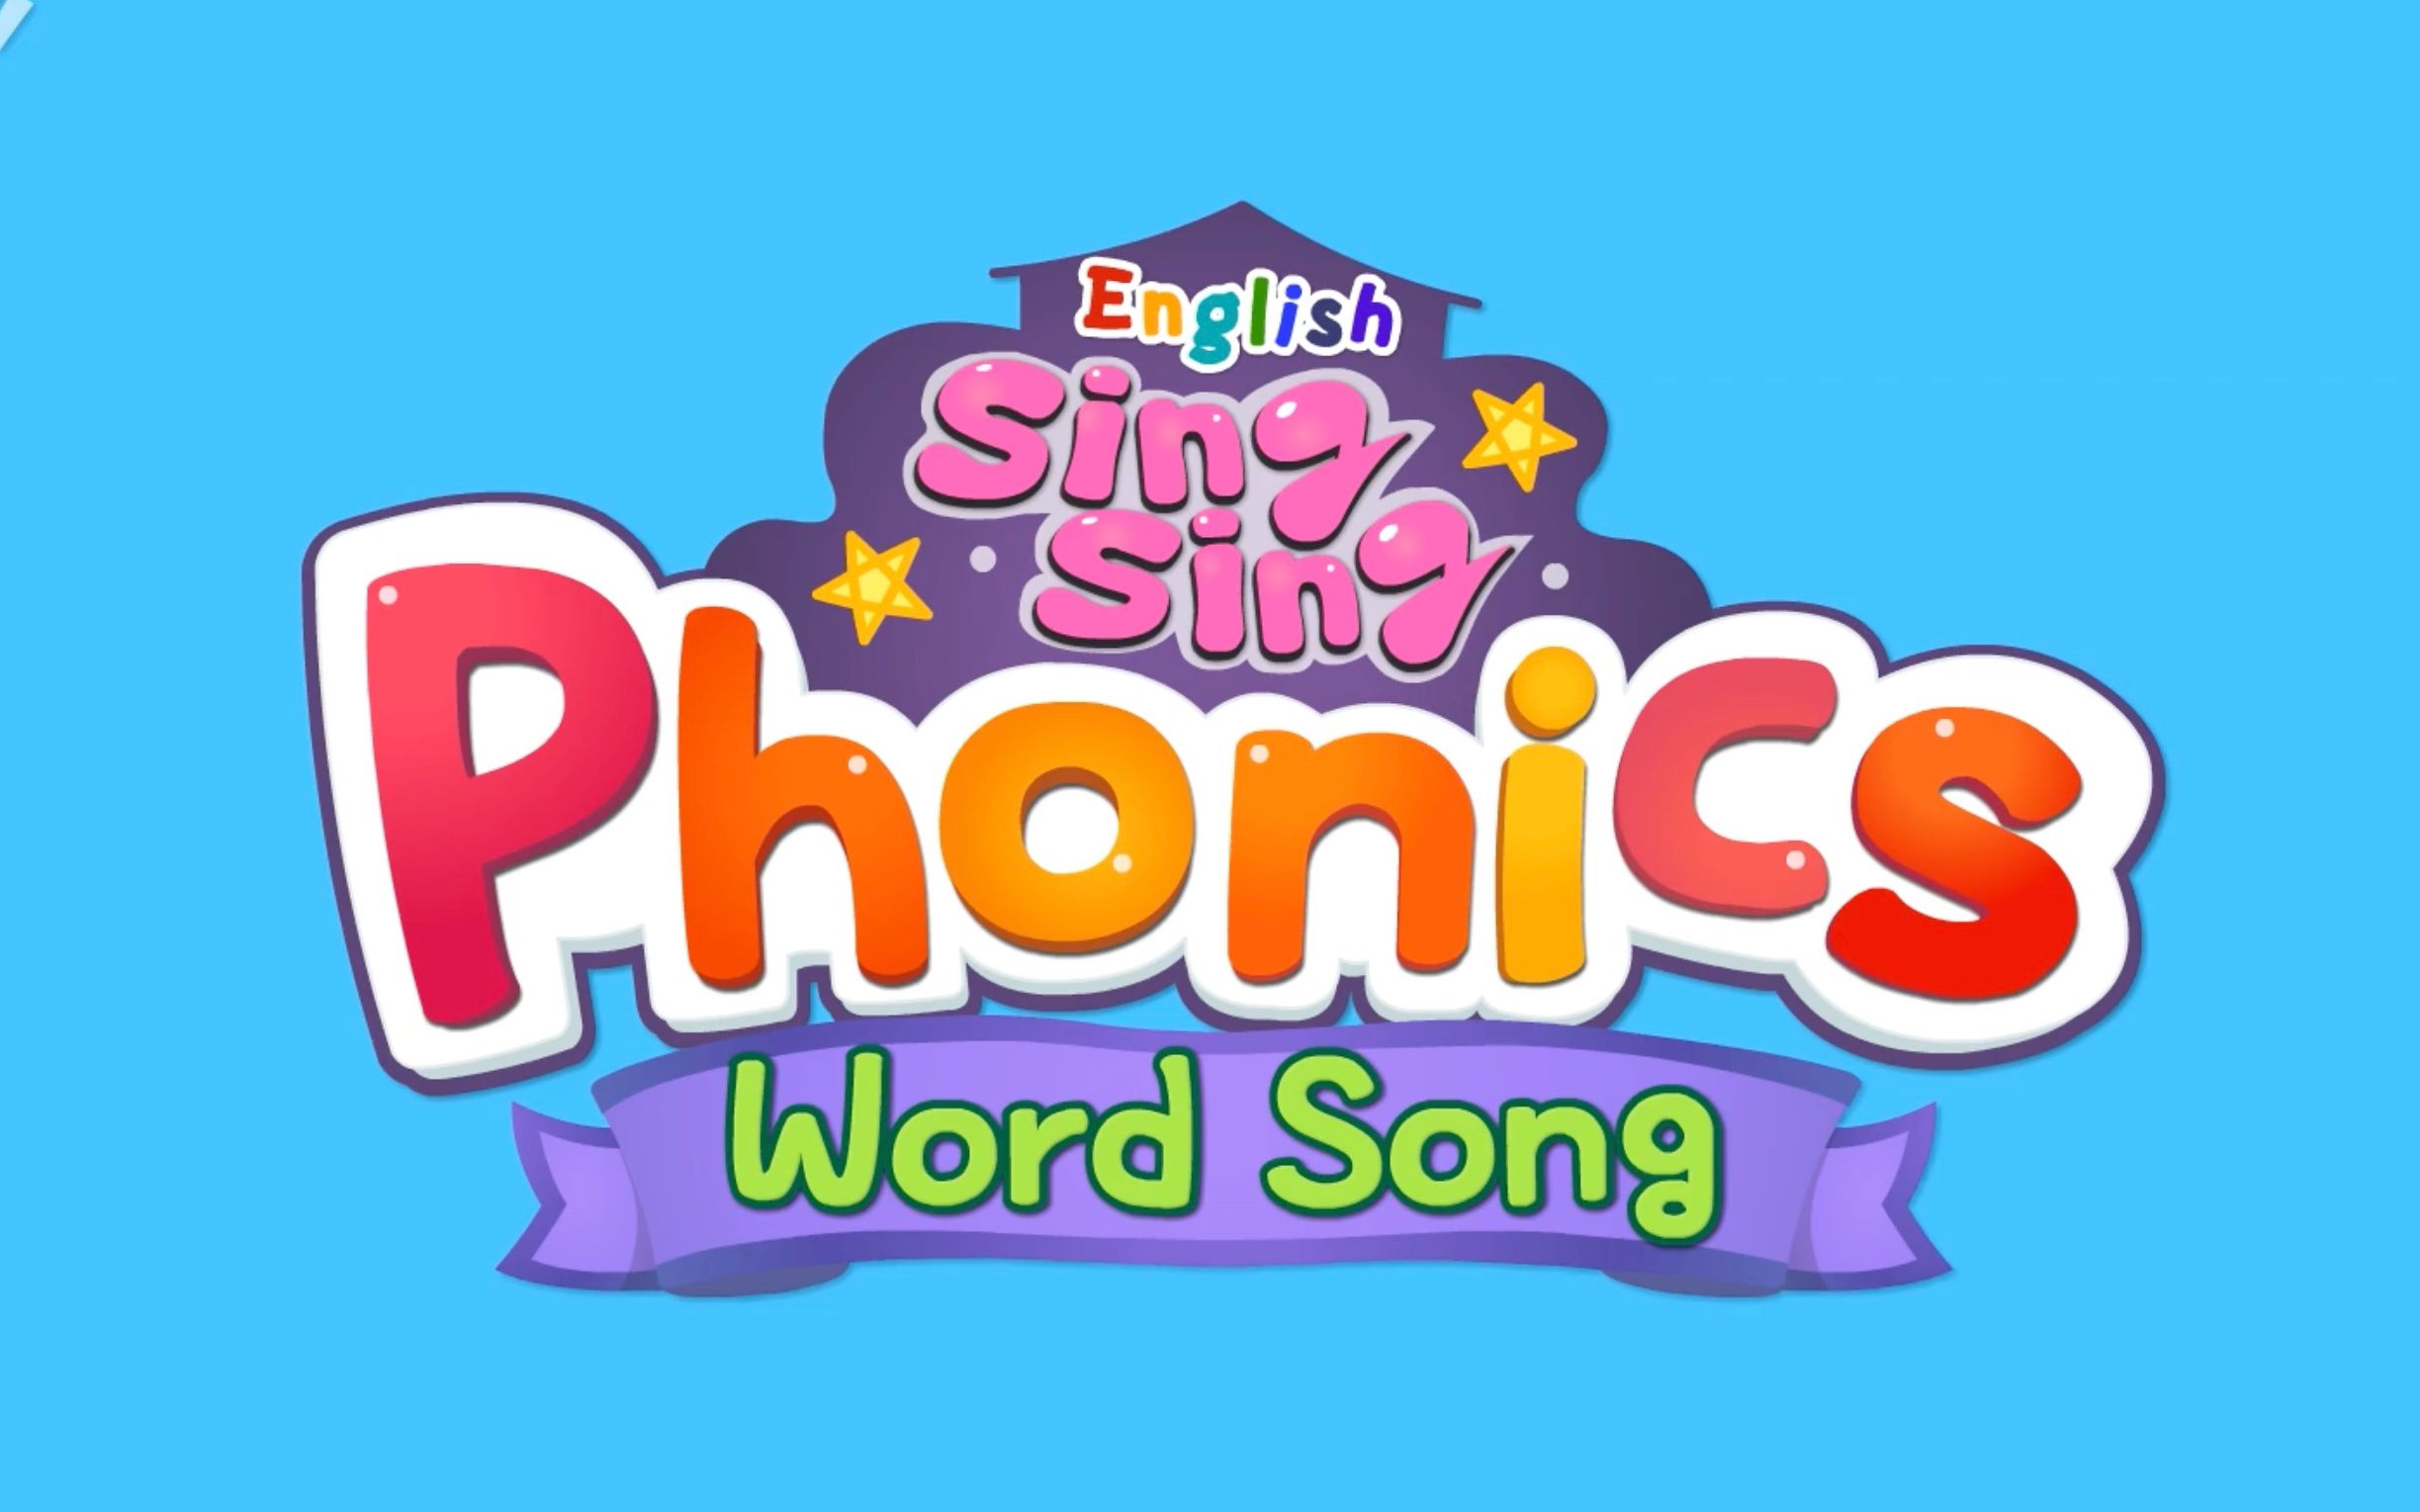 english-singsing-phonics-word-song-26-bilibili